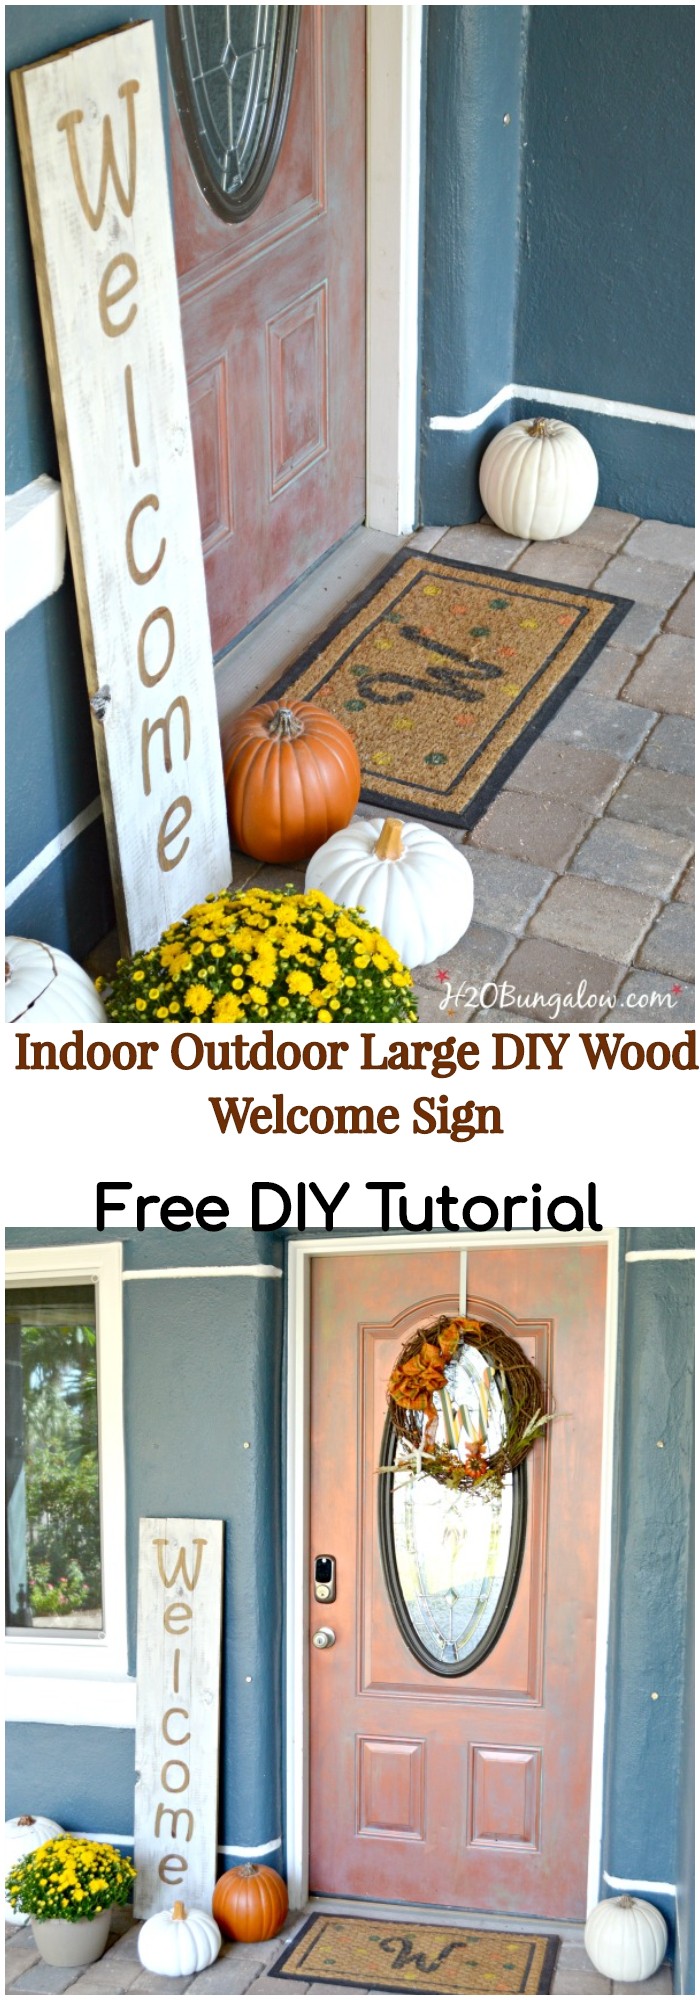 DIY Indoor Outdoor Large Wood Welcome Sign